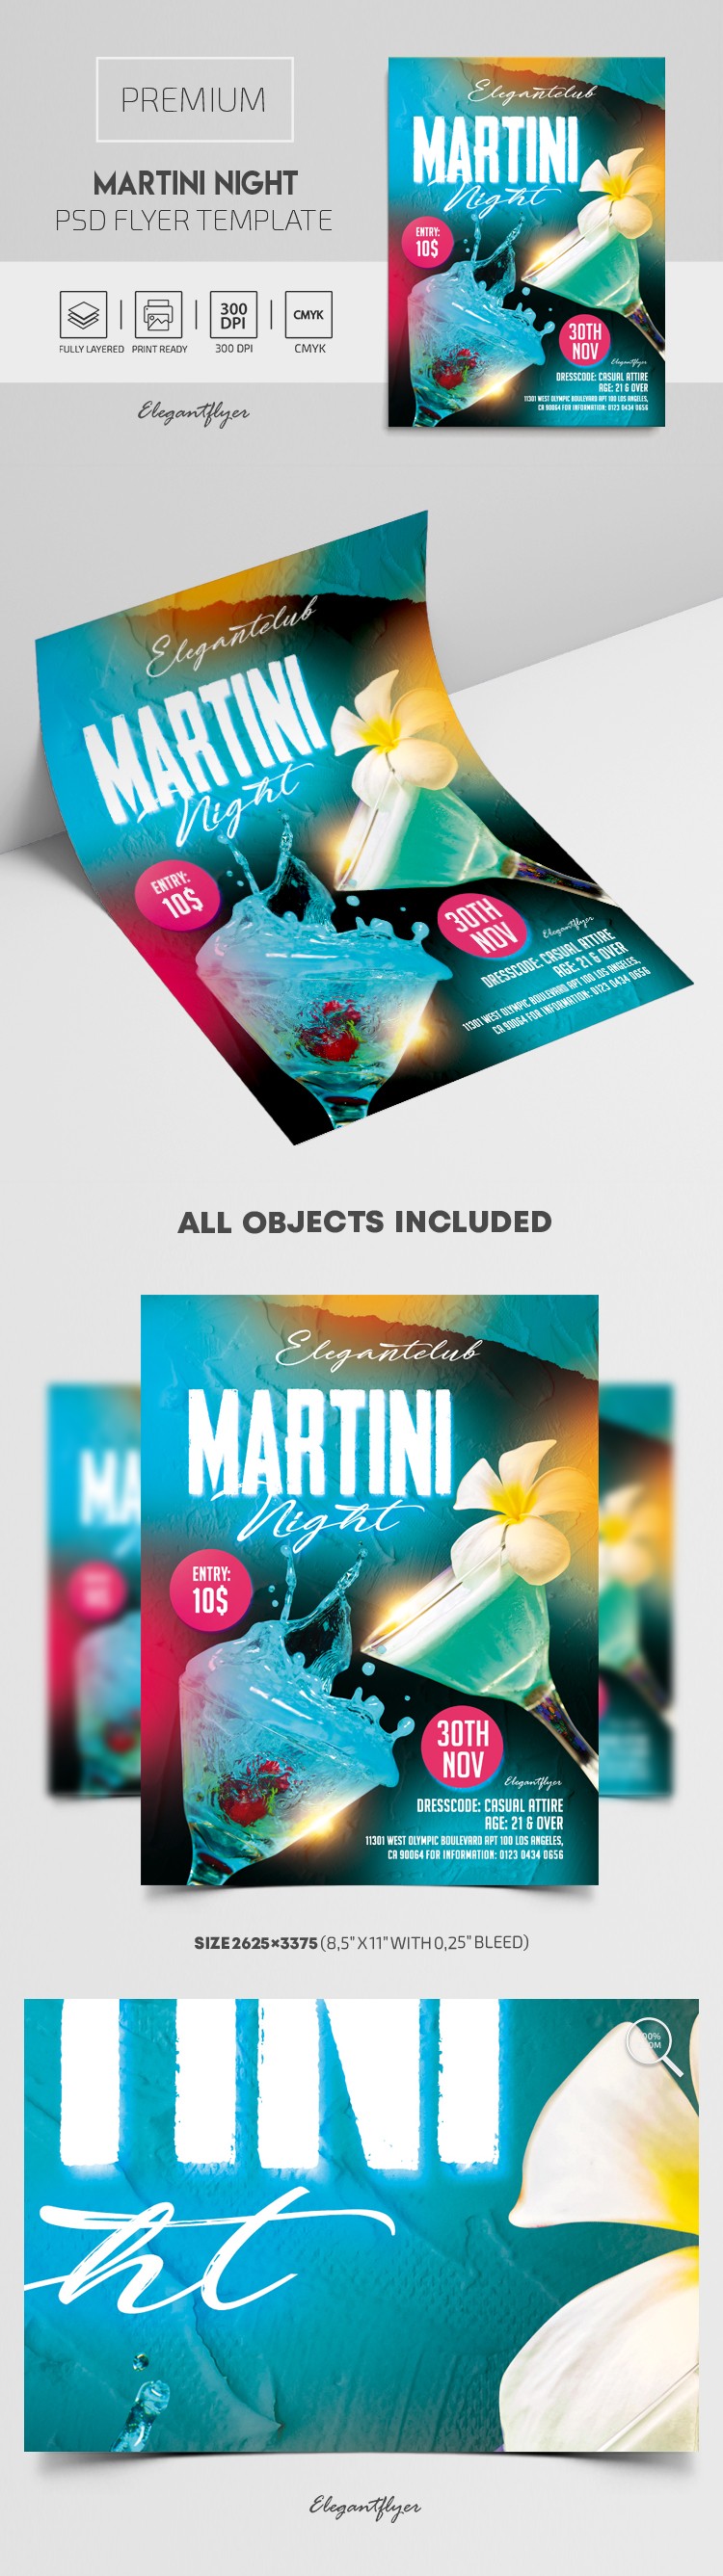 Martini Night Flyer by ElegantFlyer